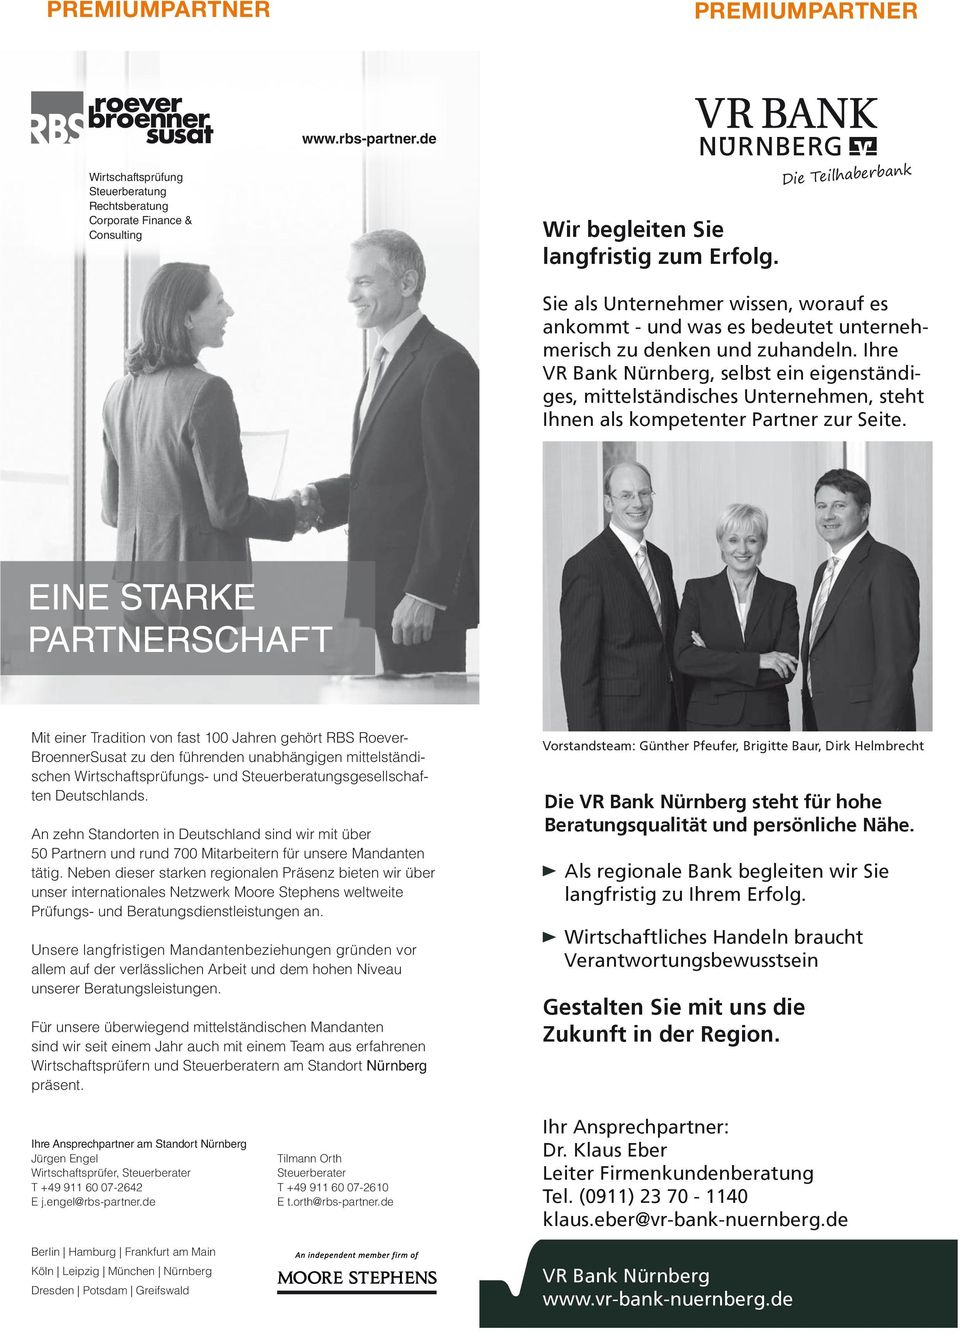 Ihre VR Bank Nürnberg, selbst ein eigenständiges, mittelständisches Unternehmen, steht Ihnen als kompetenter Partner zur Seite.